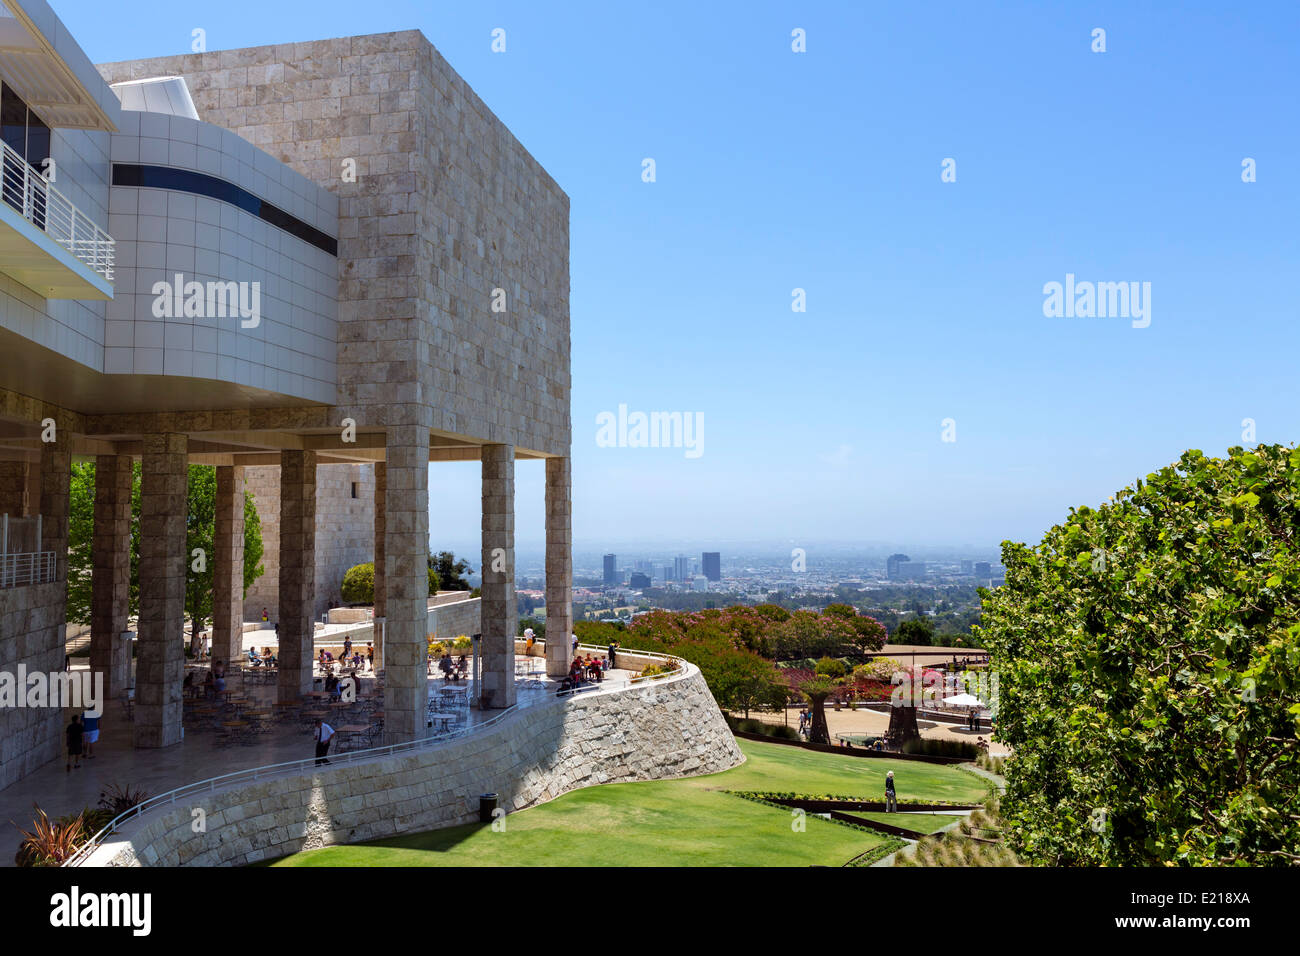 Il Getty Center complesso museale sulla sommità di una collina che domina la città di Los Angeles, Brentwood, Los Angeles, California, Stati Uniti d'America Foto Stock